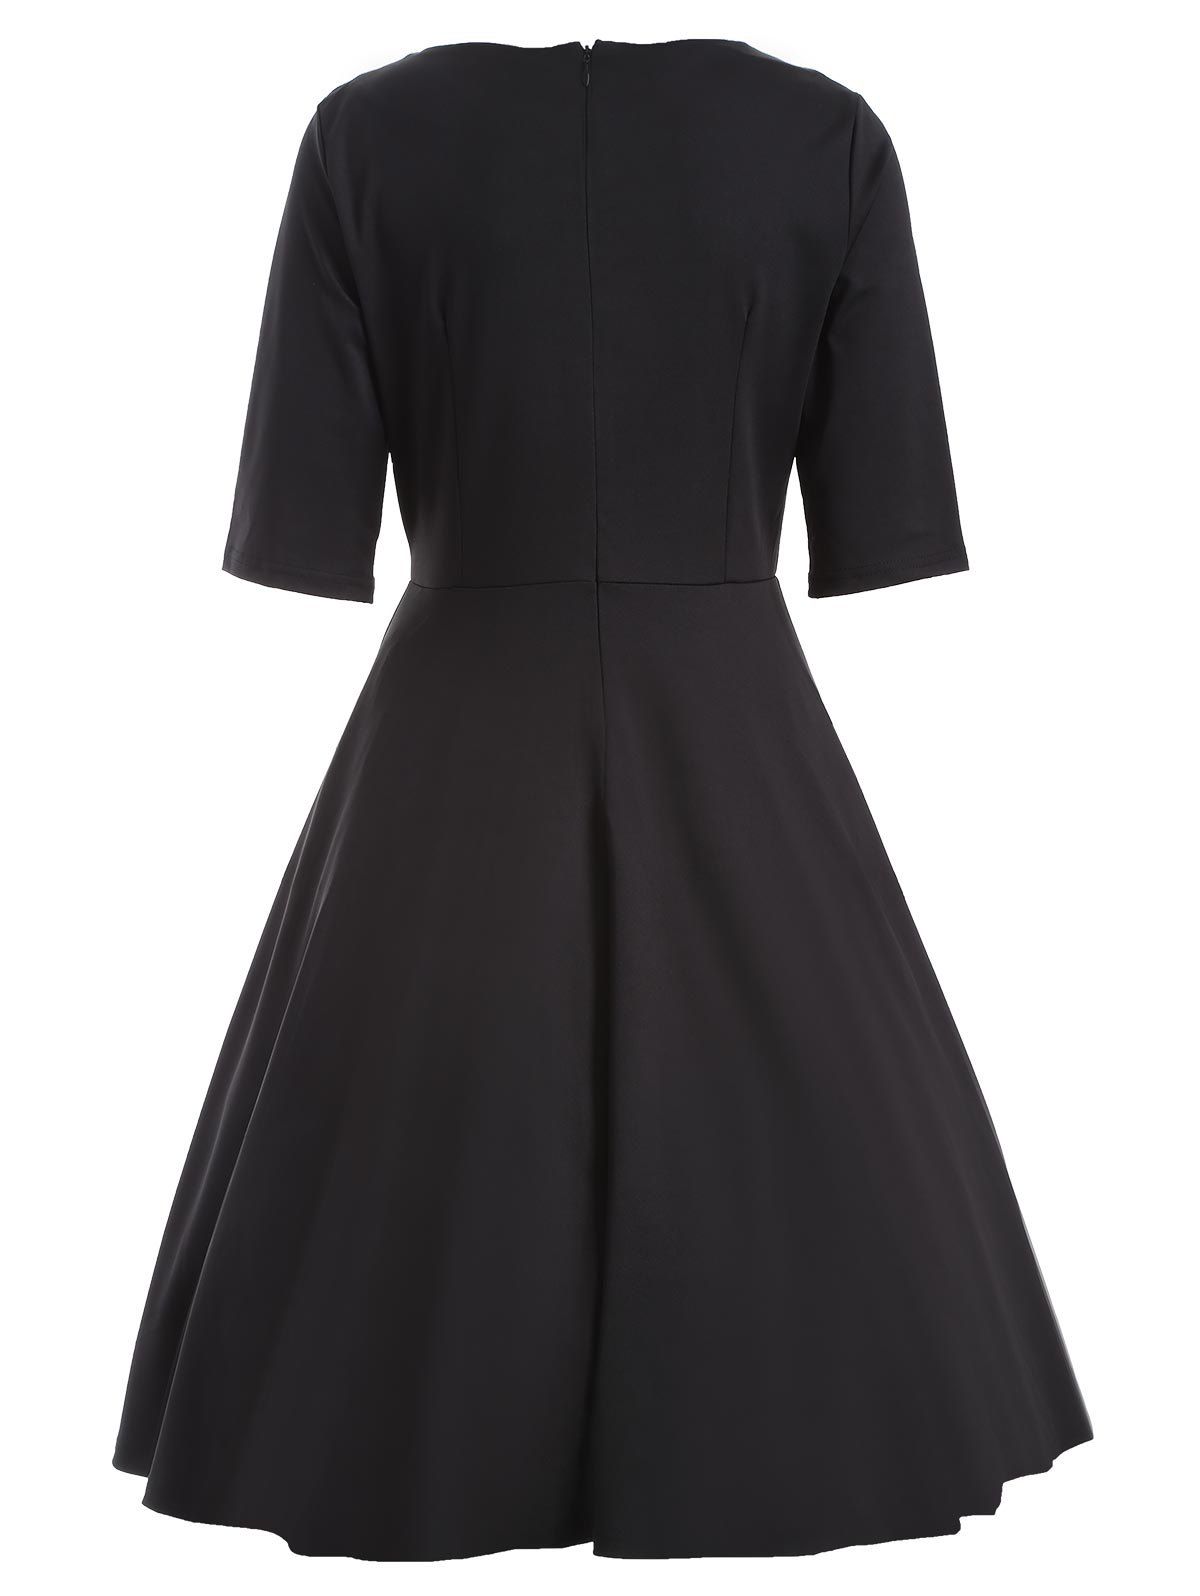 2018 Color Spliced High Waist Swing Dress BLACK M In Vintage Dresses ...